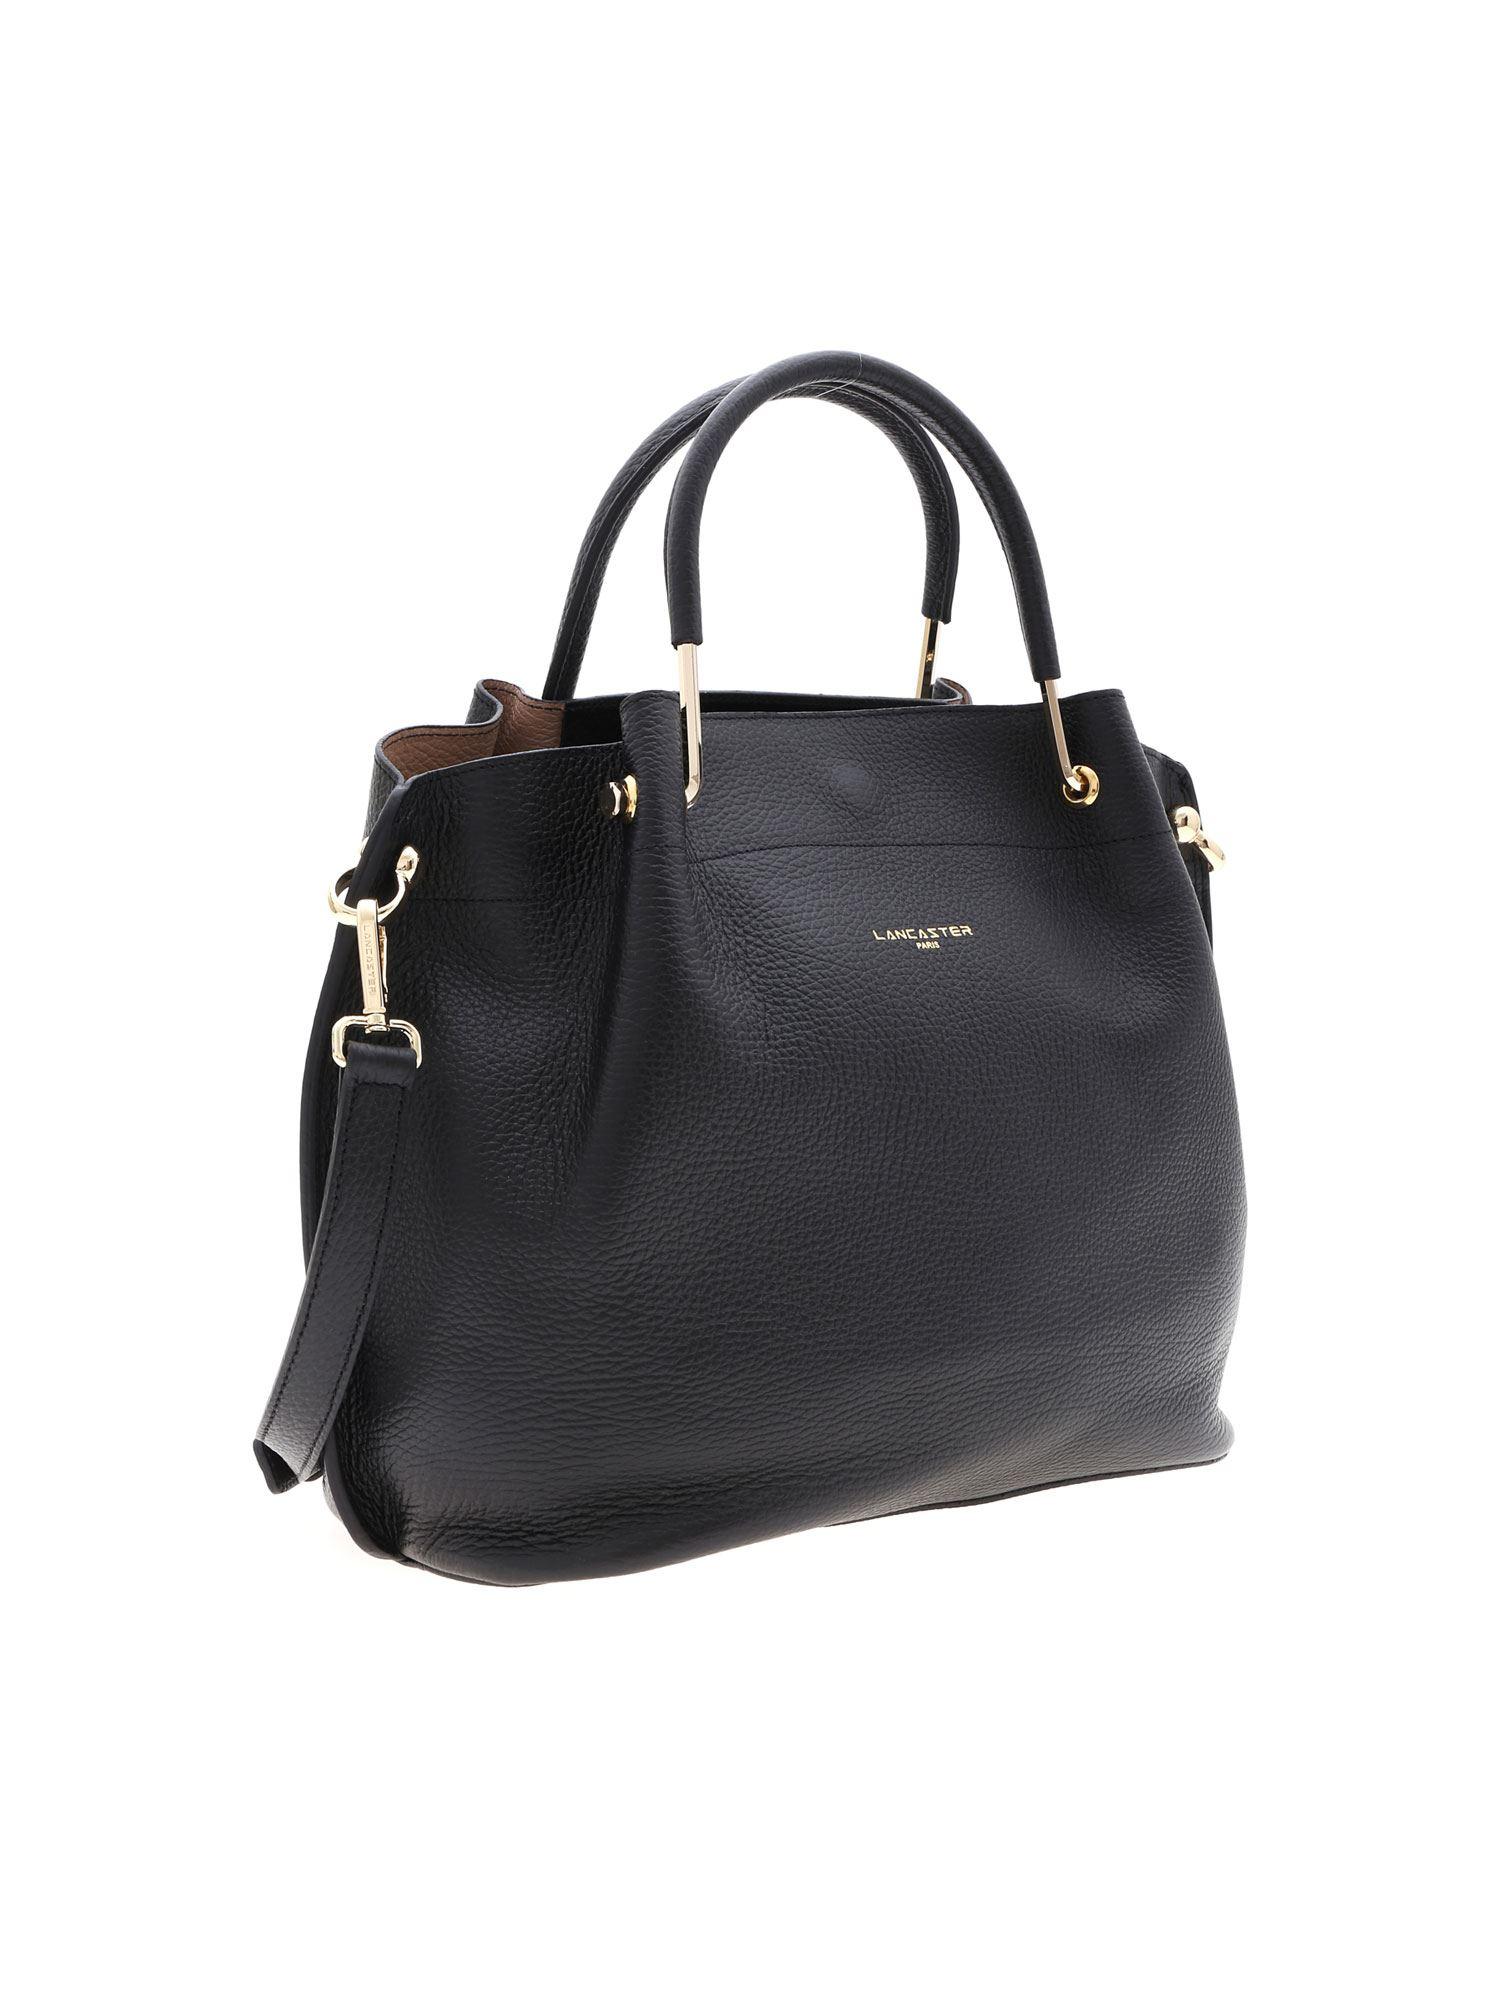 Lancaster Paris Leather Black Shoulder Bag With Golden Laminated Logo - Lyst